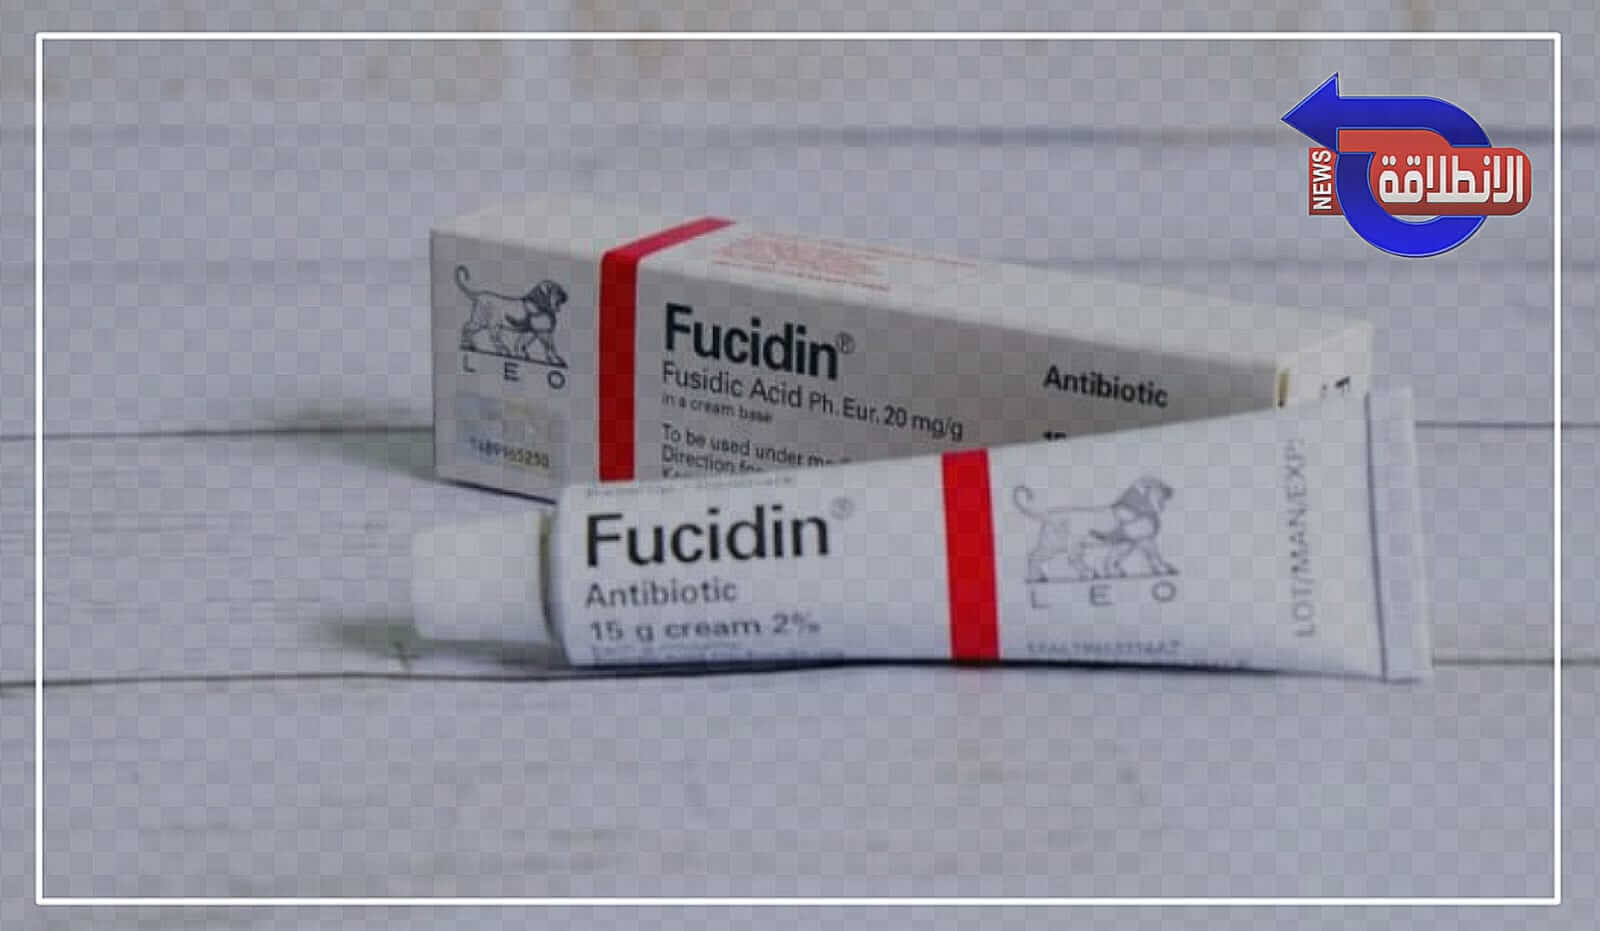 سعر كريم فيوسيدين Fucidin 2023 لعلاج المنطقة الحساسة والالتهابات الجلدية